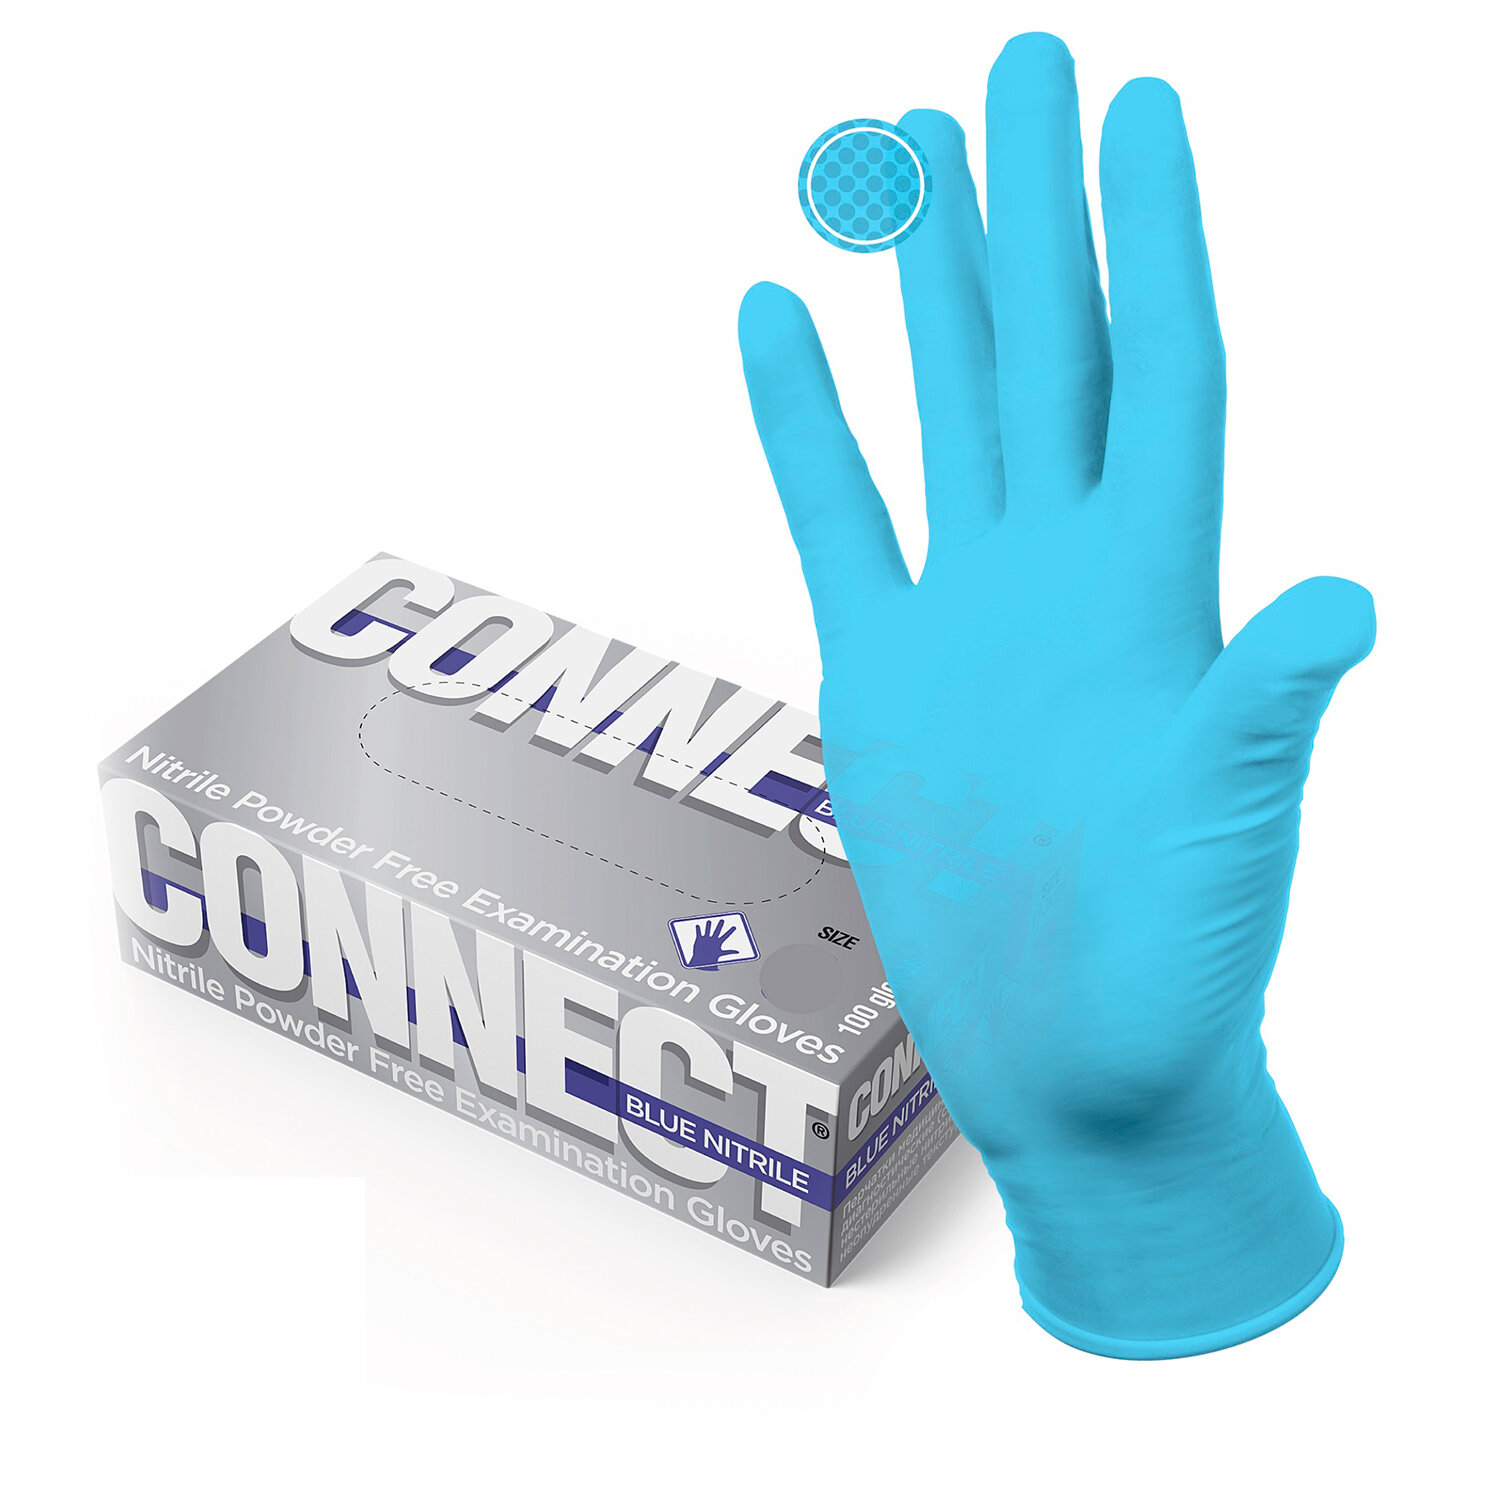 Перчатки CONNECT 631129, голубые, комплект 2 упаковки по 50 пар (100 штук/уп), размер S (малые)